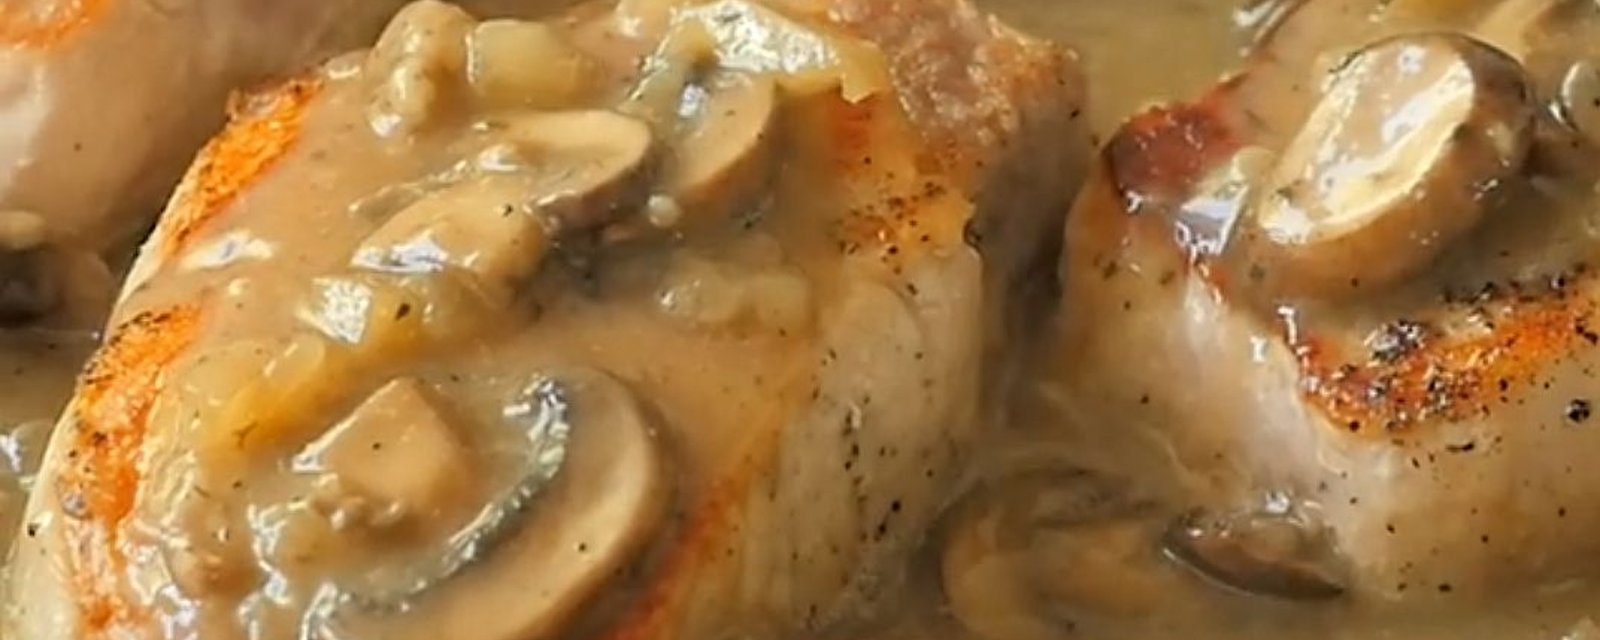 Côtelettes de porc dans une sauce aux champignons